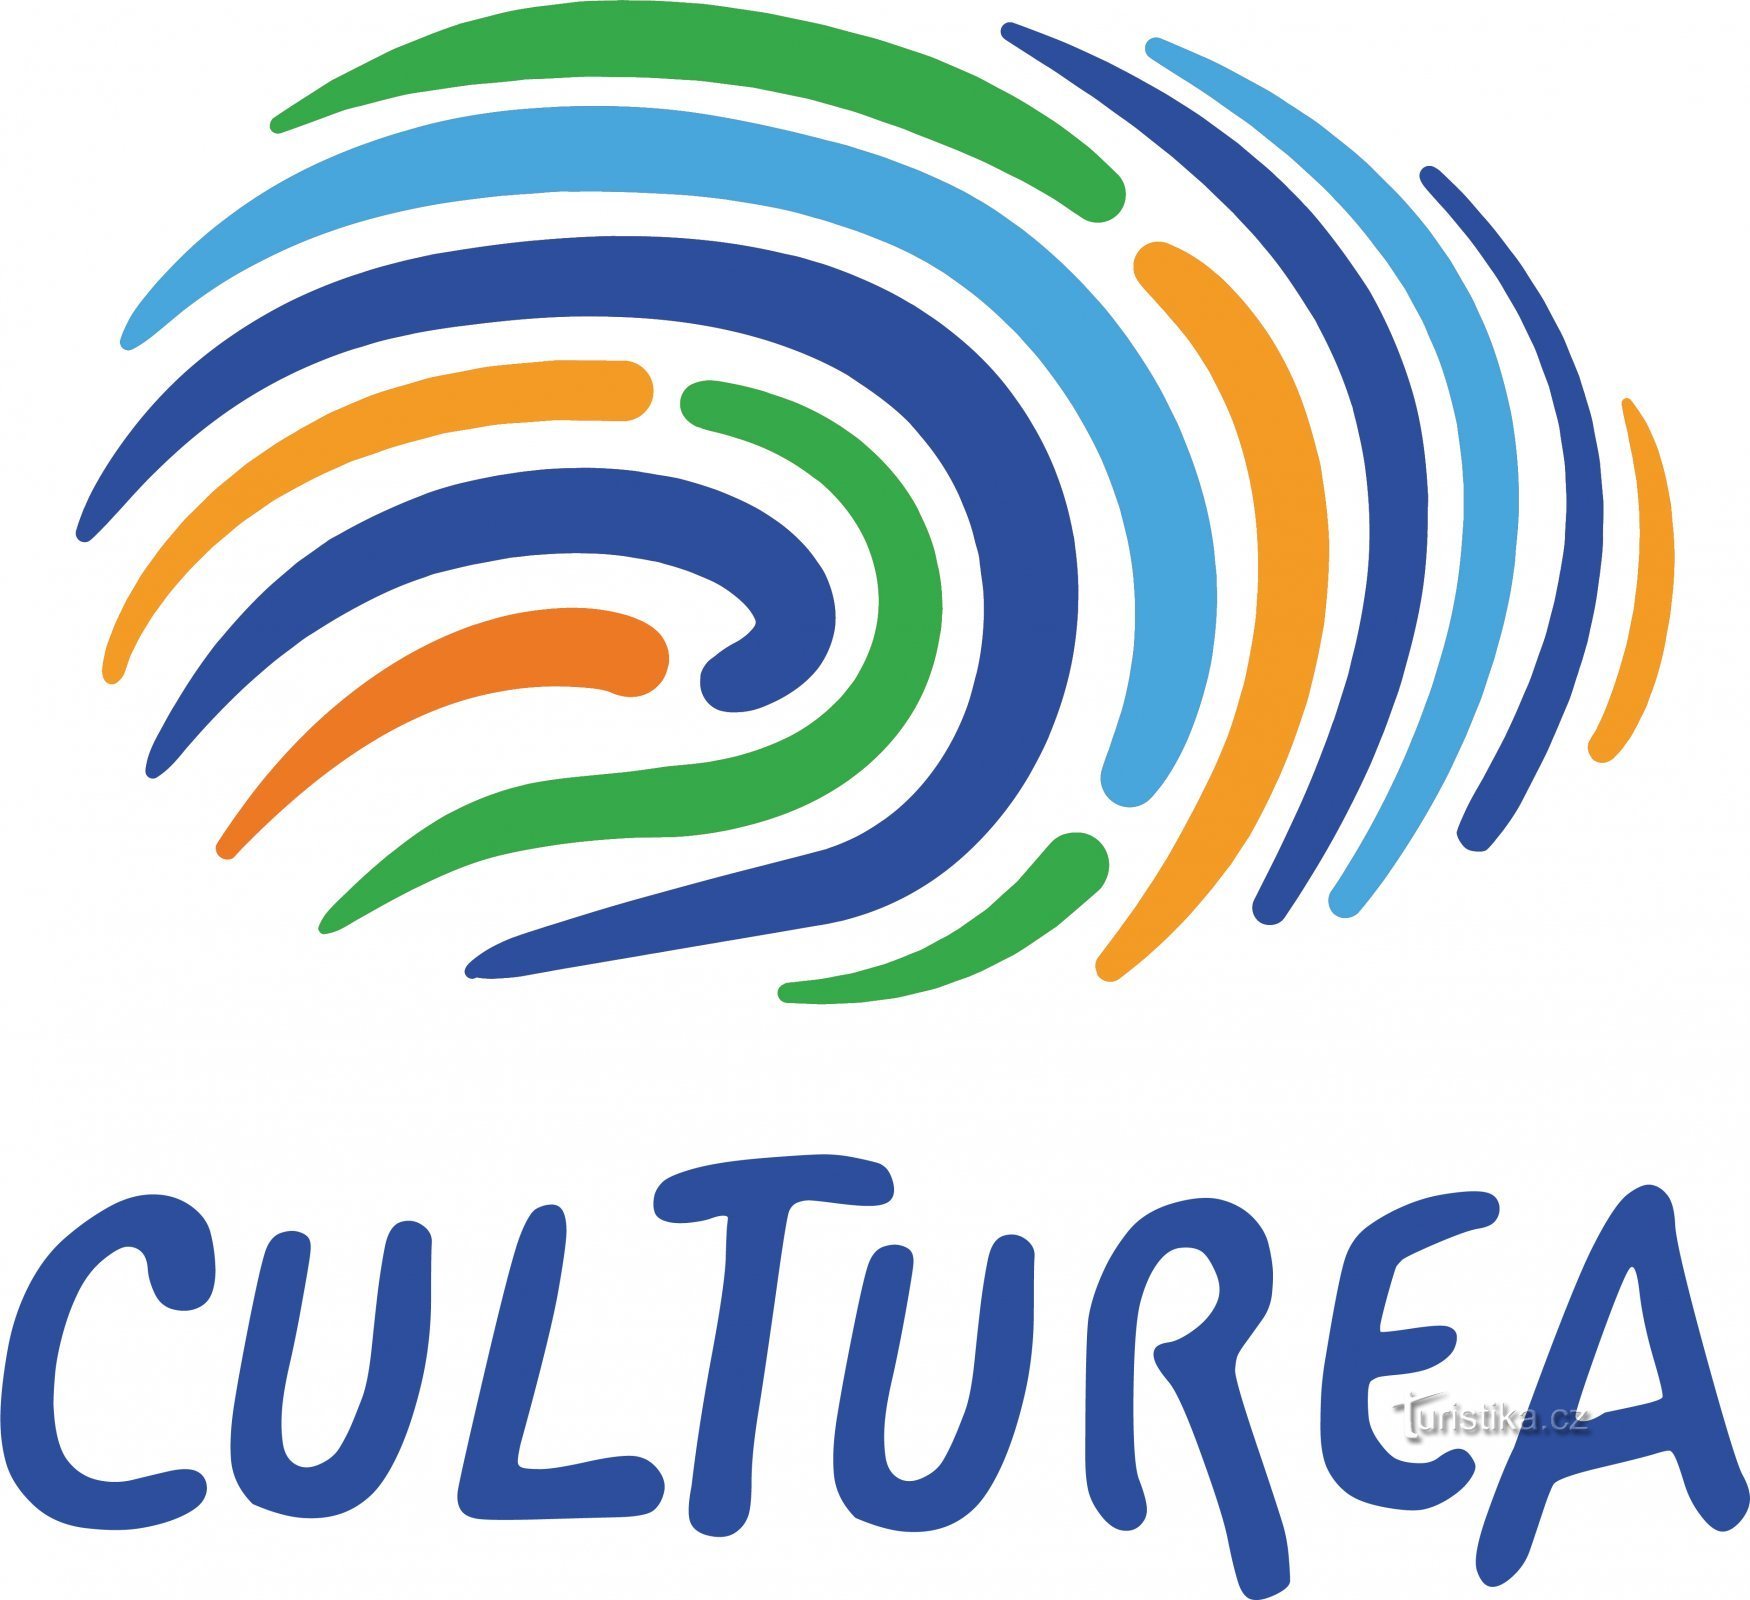 ¡"Viaja diferente" con el proyecto Culturea!